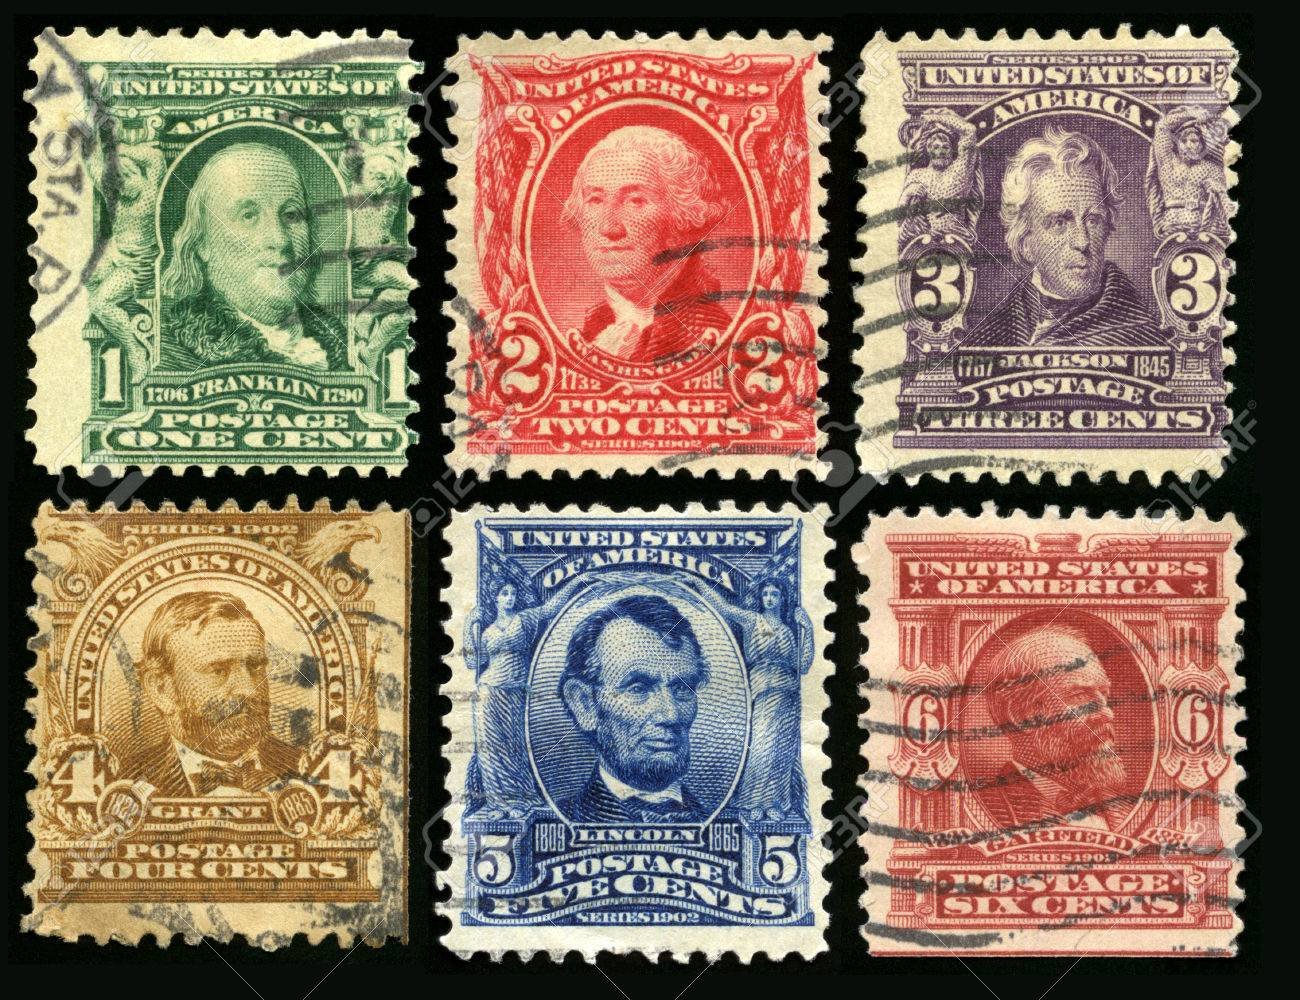 sello postal de estados unidos vintage